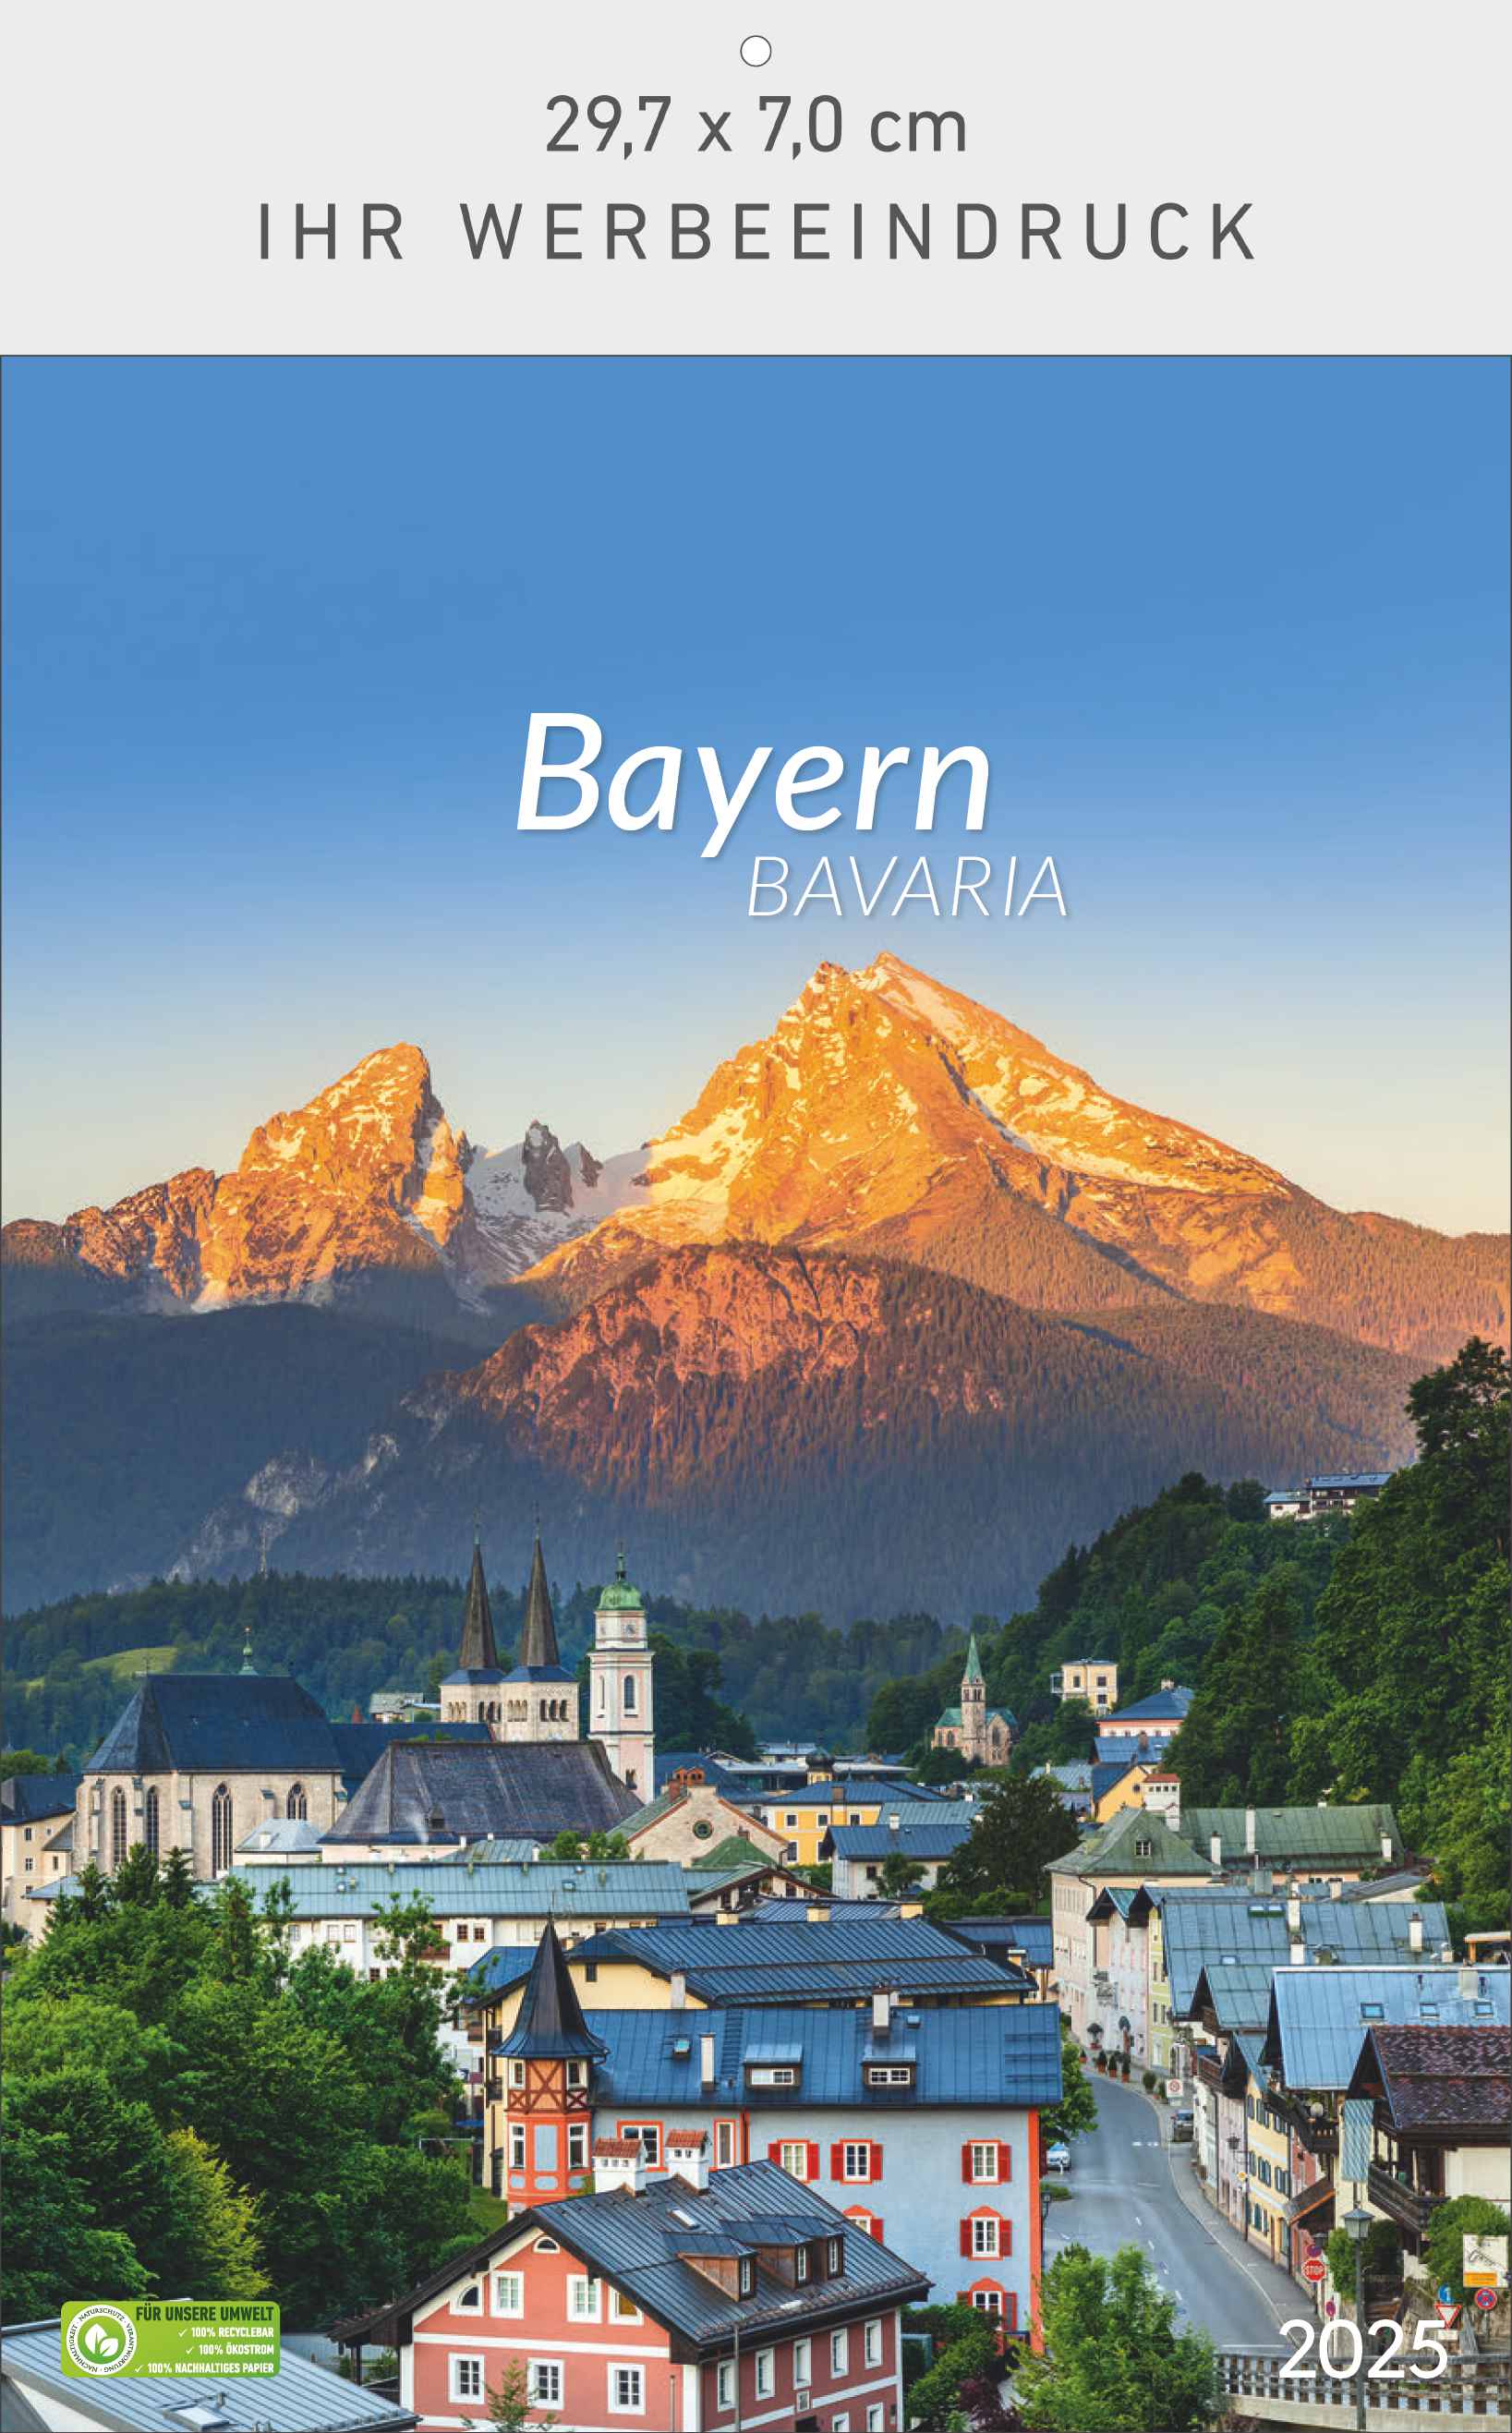 Bayern - Bavaria